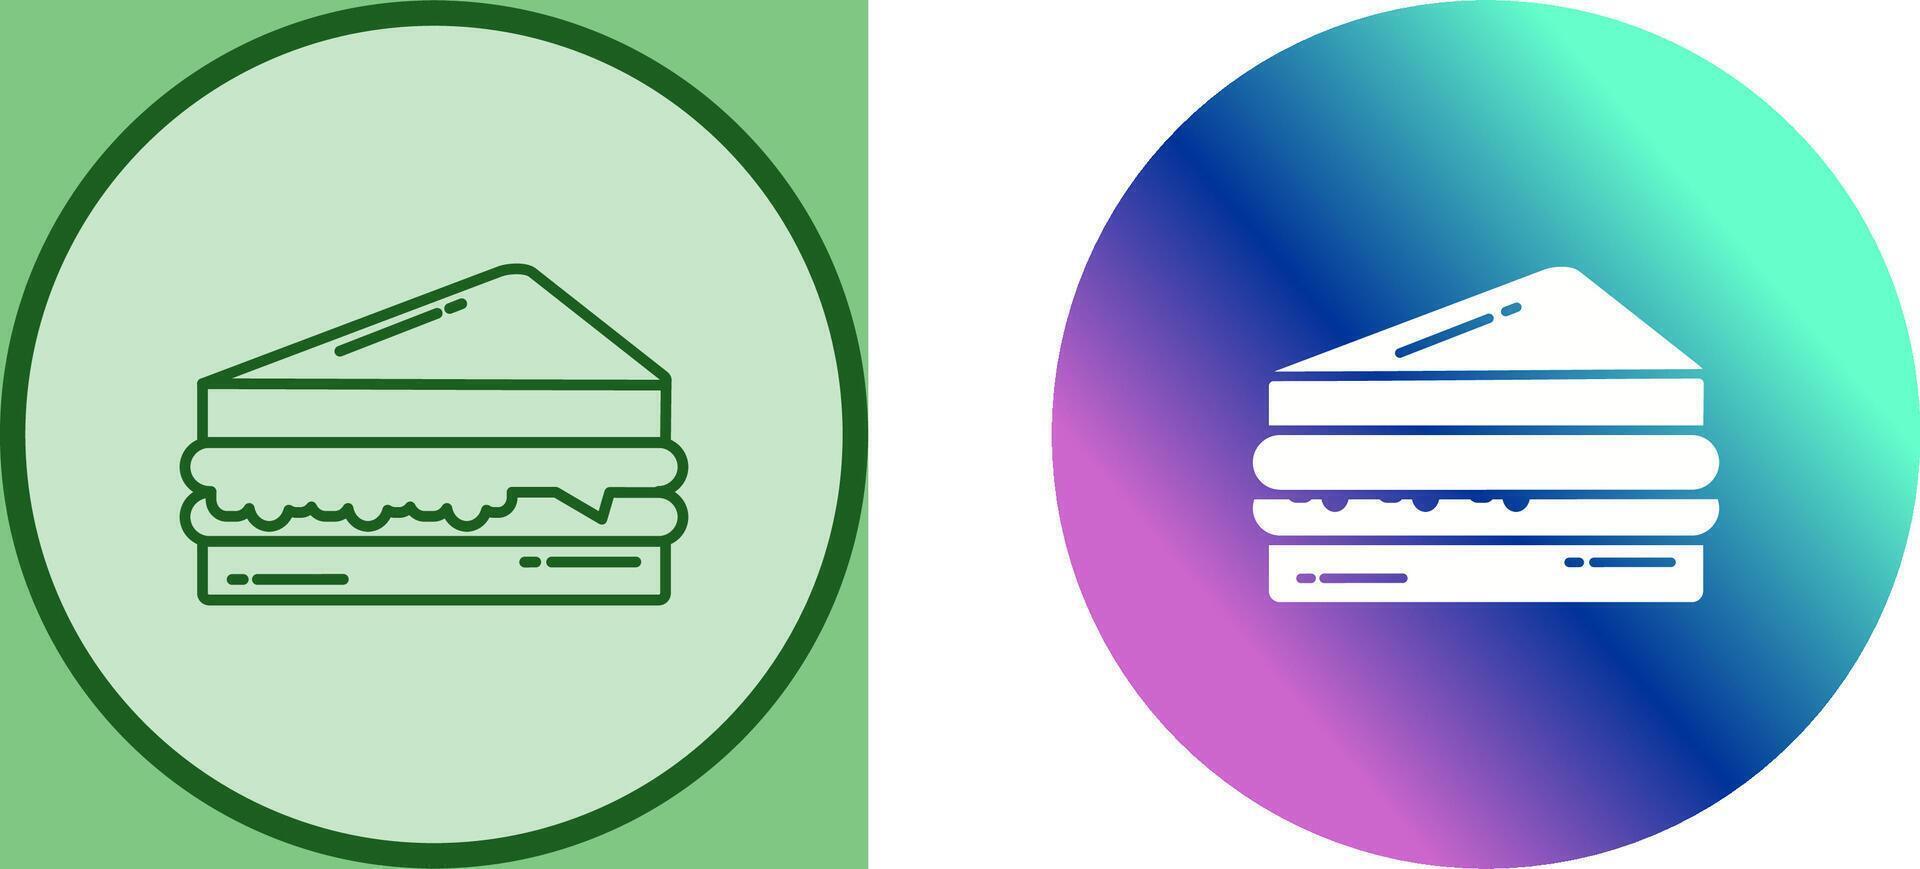 Sandwich Icon Design vector